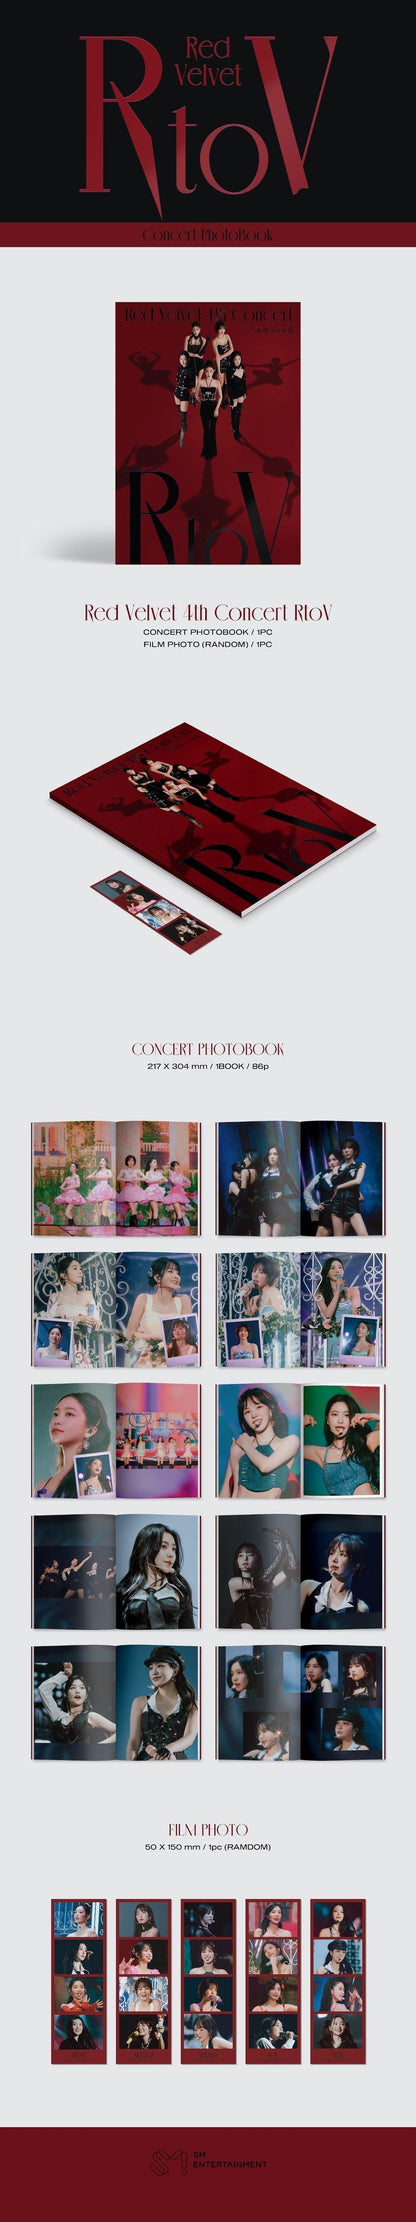 Red Velvet - 4th Concert : [R to V] Concert Photobook - KAEPJJANG SHOP (캡짱 숍)